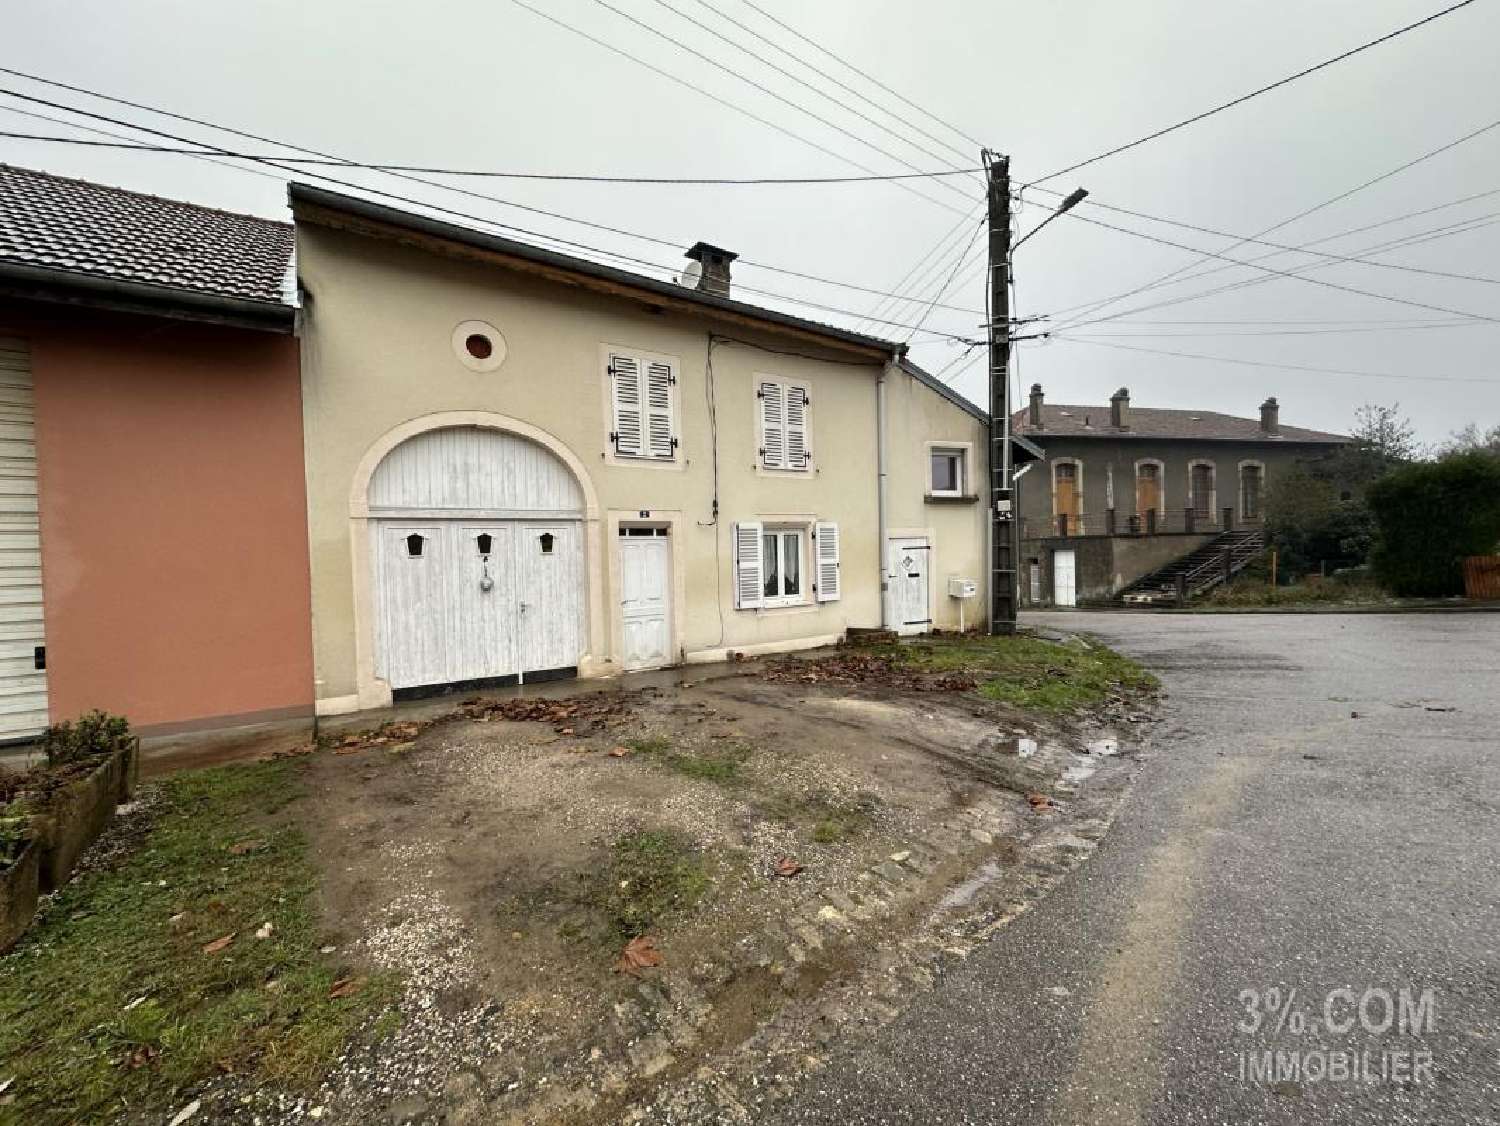  à vendre maison de village Petitmont Meurthe-et-Moselle 3